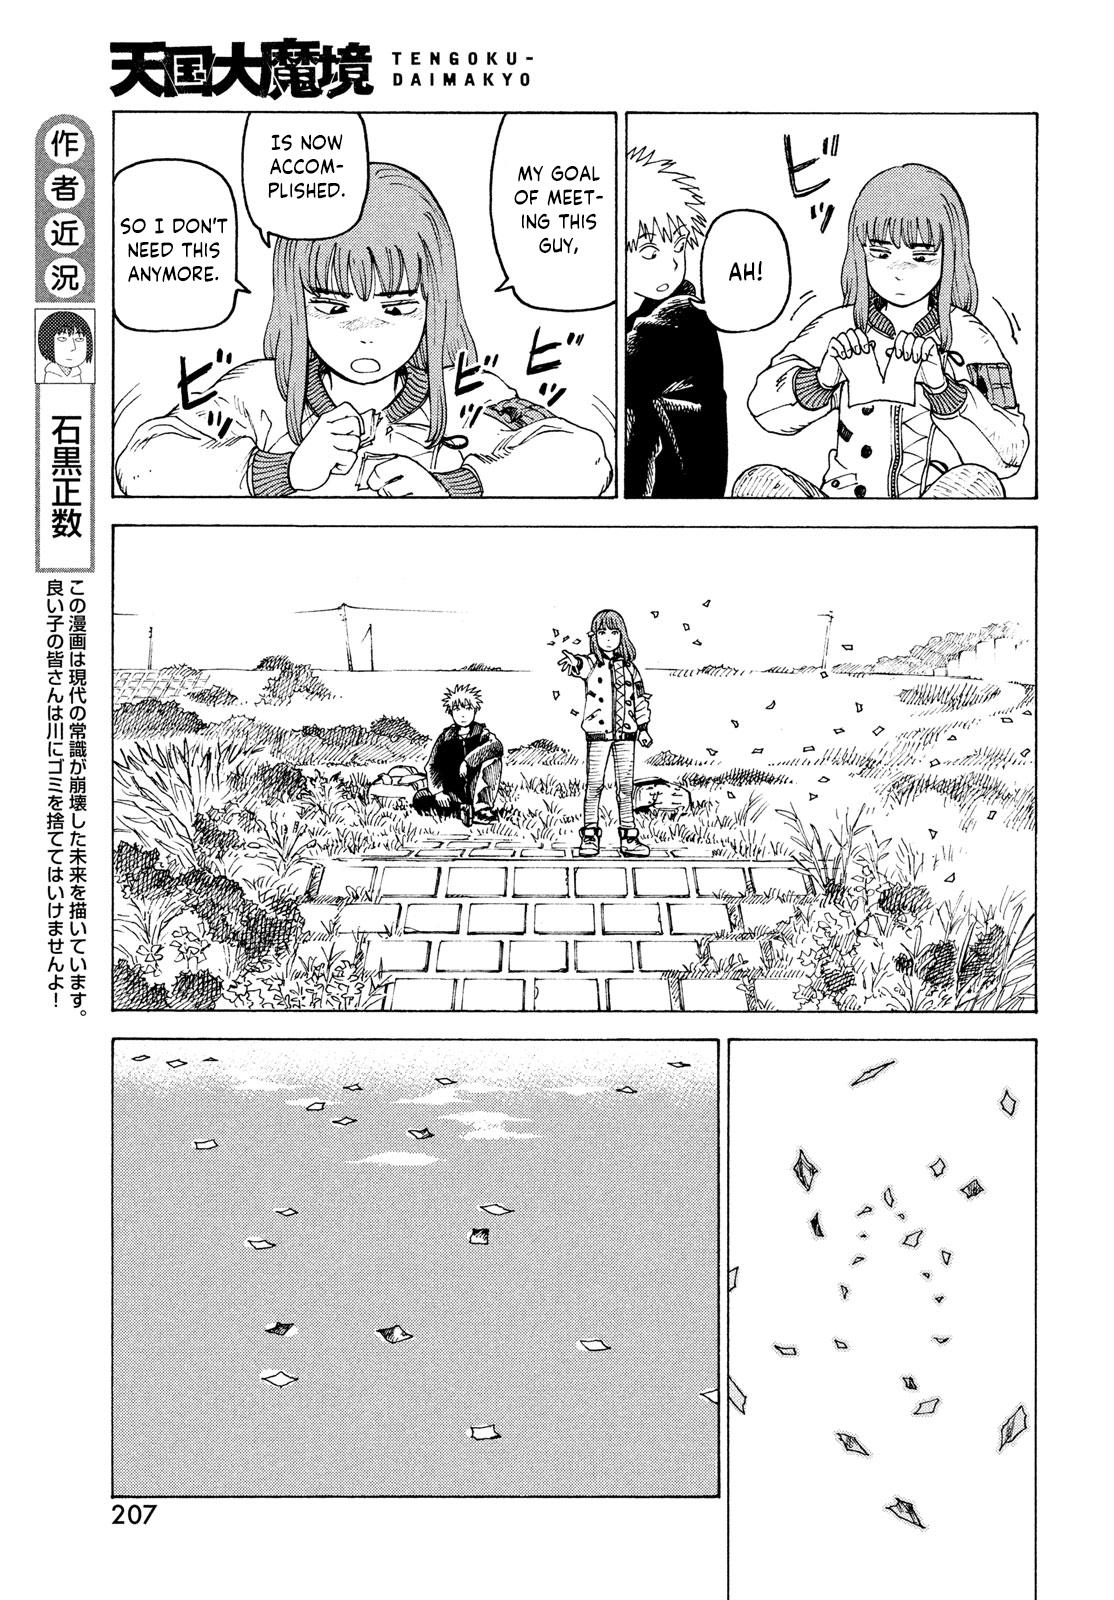 Tengoku Daimakyou Chapter 34: Inazaki Robin ➂ page 23 - Mangakakalot